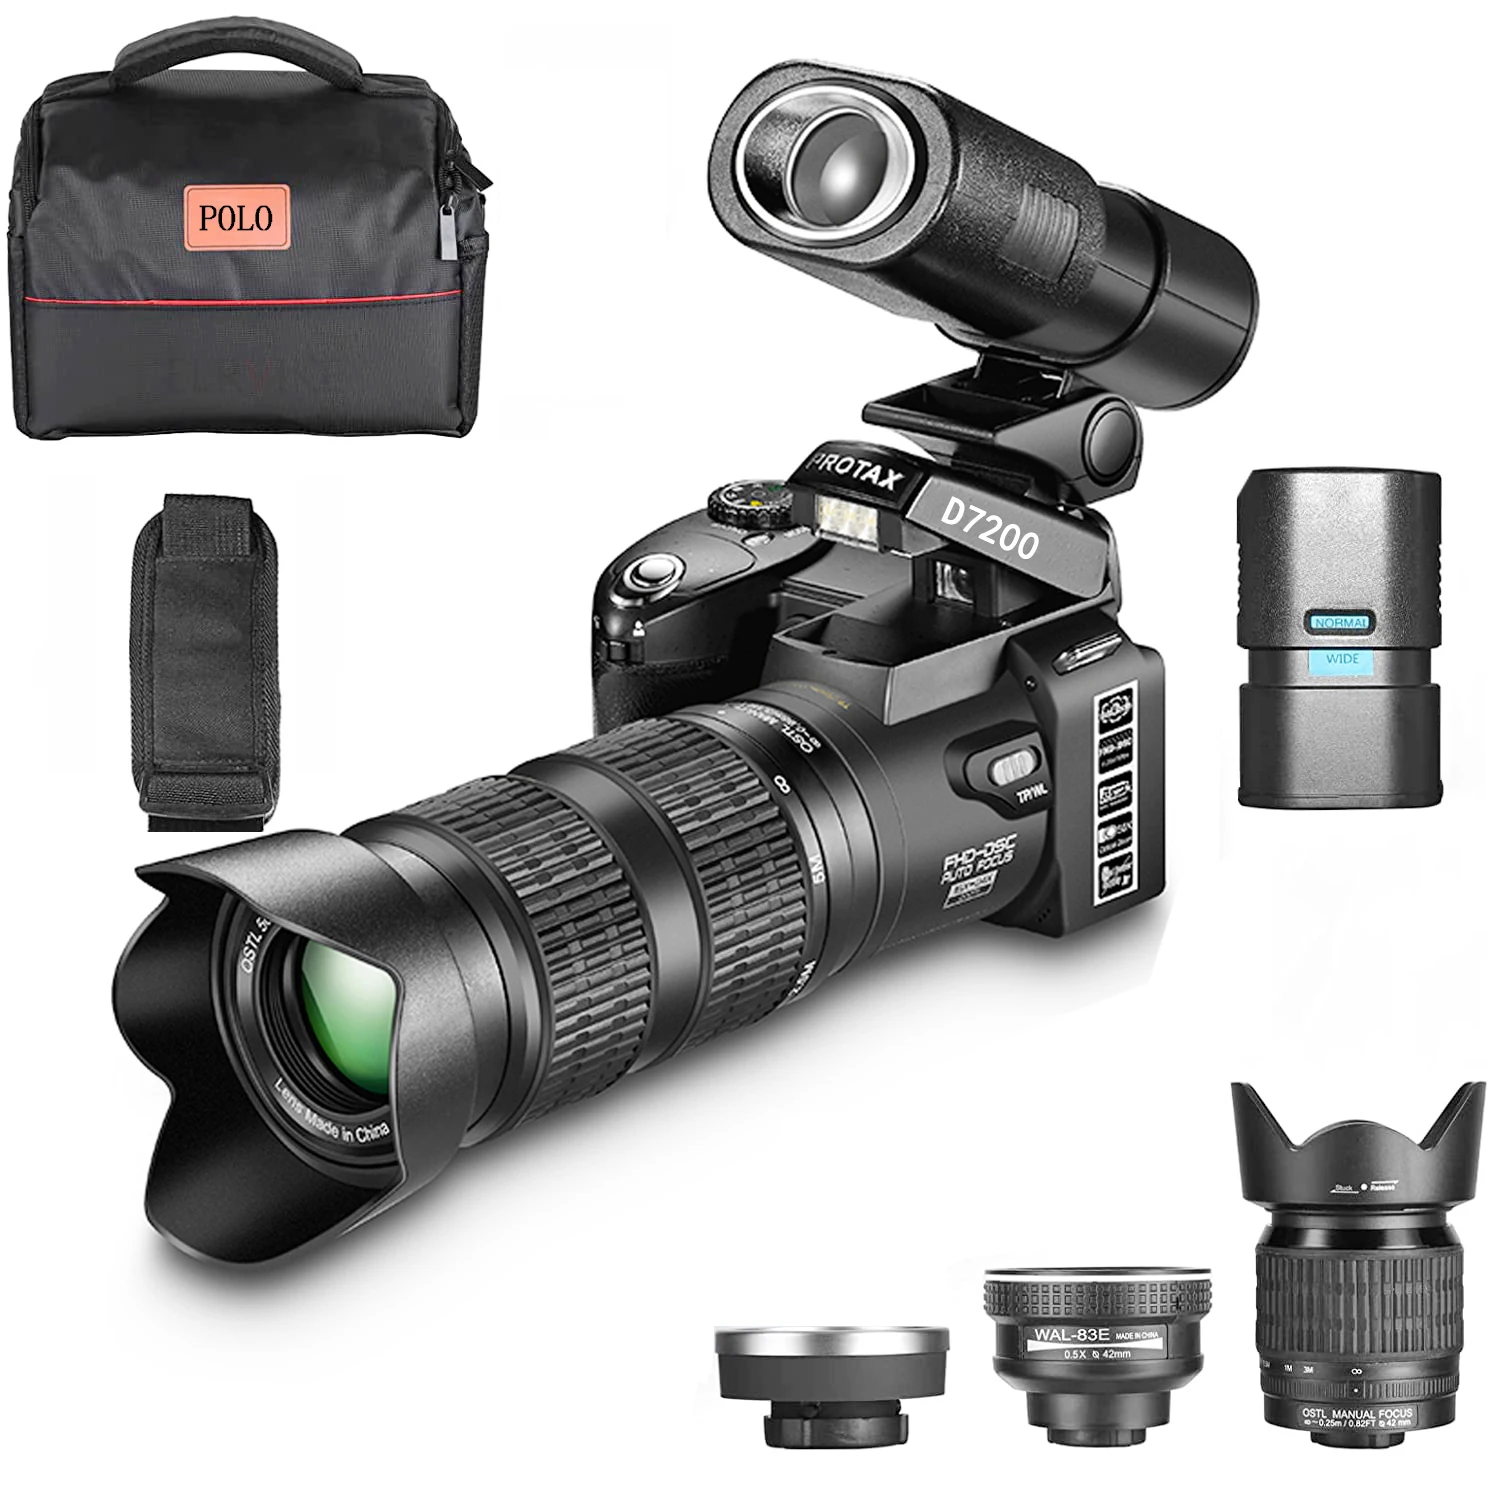 

Цифровая камера ELRVIKE HD POLO D7200 PROTAX, Профессиональная зеркальная видеокамера с автофокусом, 33 миллиона пикселей, 24-кратный оптический зум, три объектива